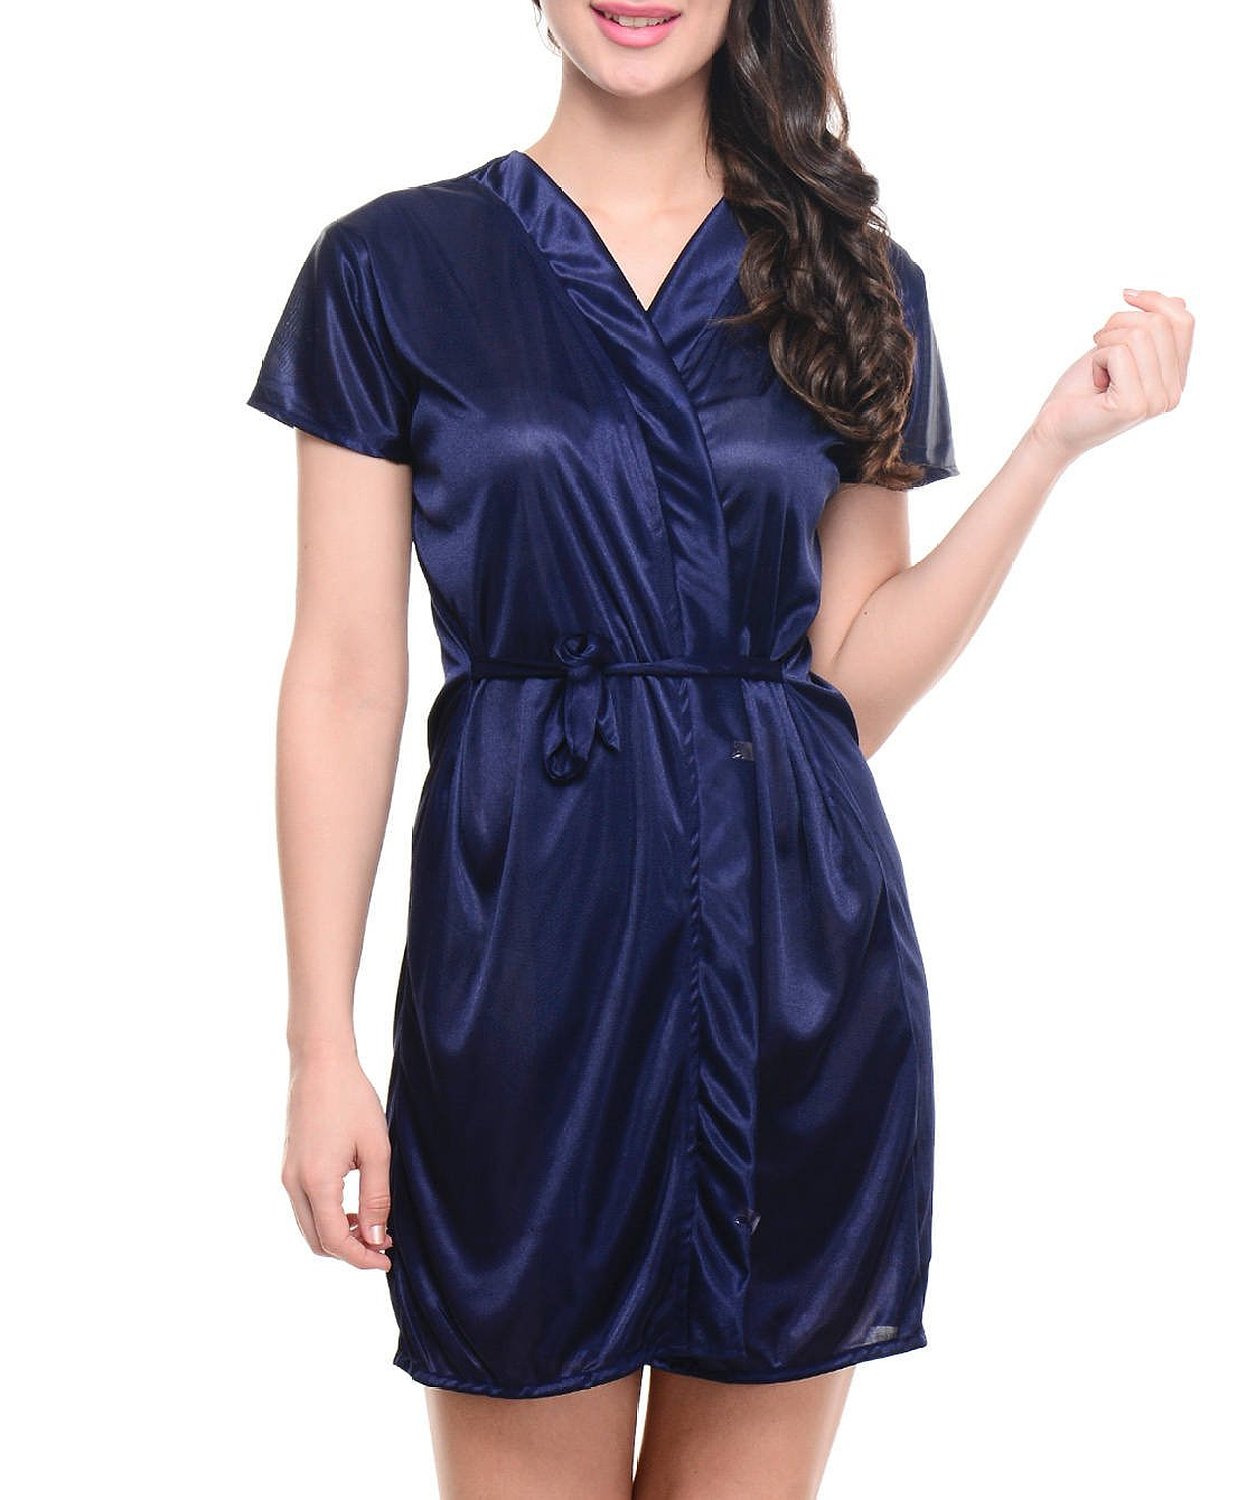 Klamotten Women's Sleepwear & Nightdress Minimum 50% Discount + Rs.50 Cashback Rs.250